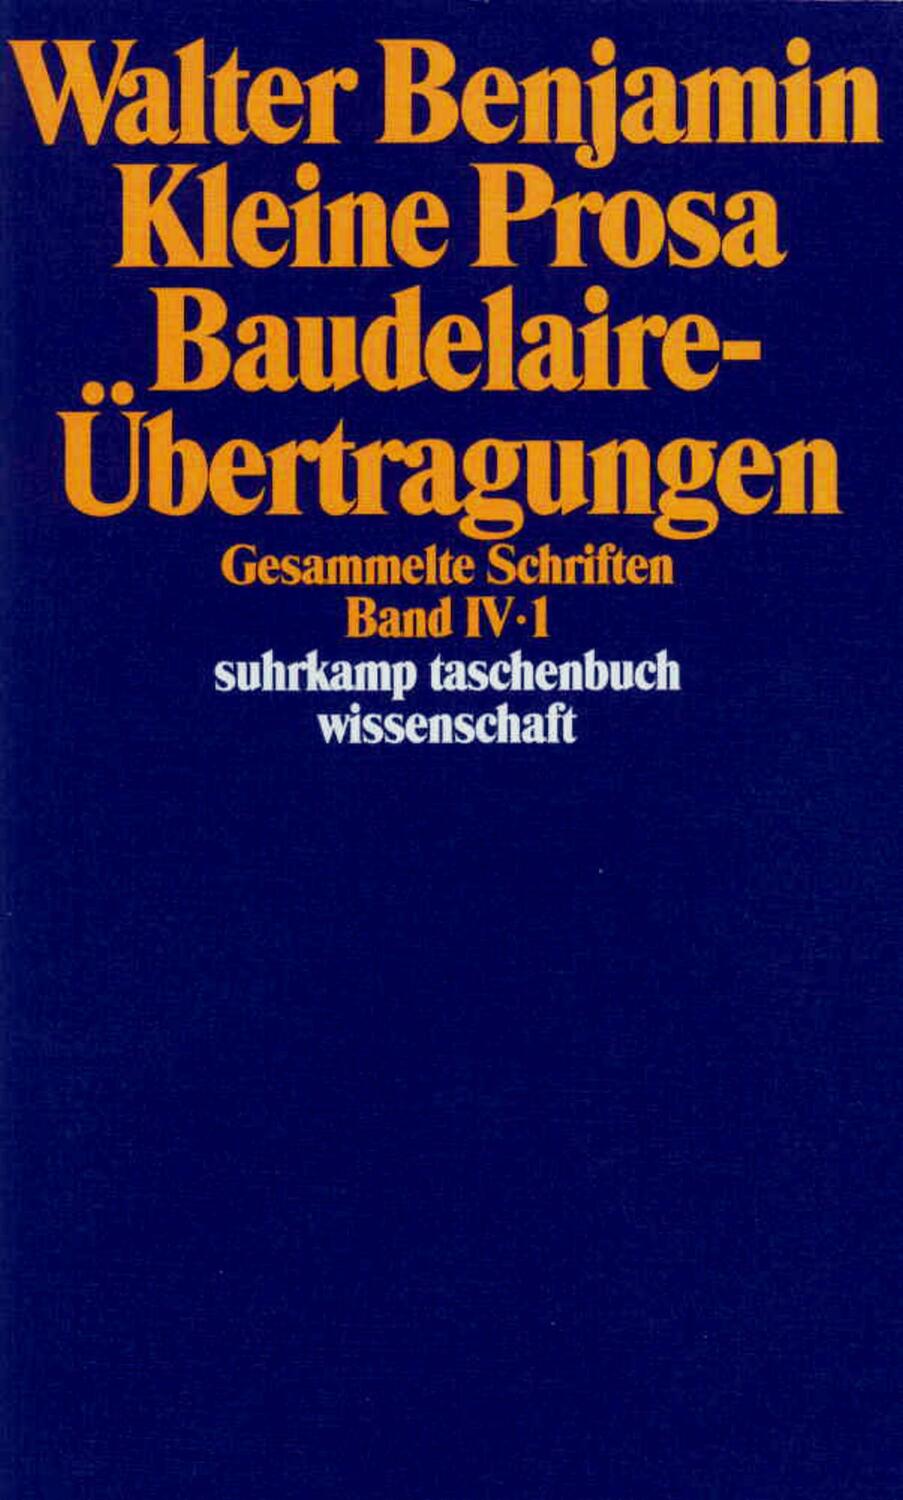 Gesammelte Schriften IV. Kleine Prosa, Baudelaire-Übertragungen. 2 Teilbände - Benjamin, Walter